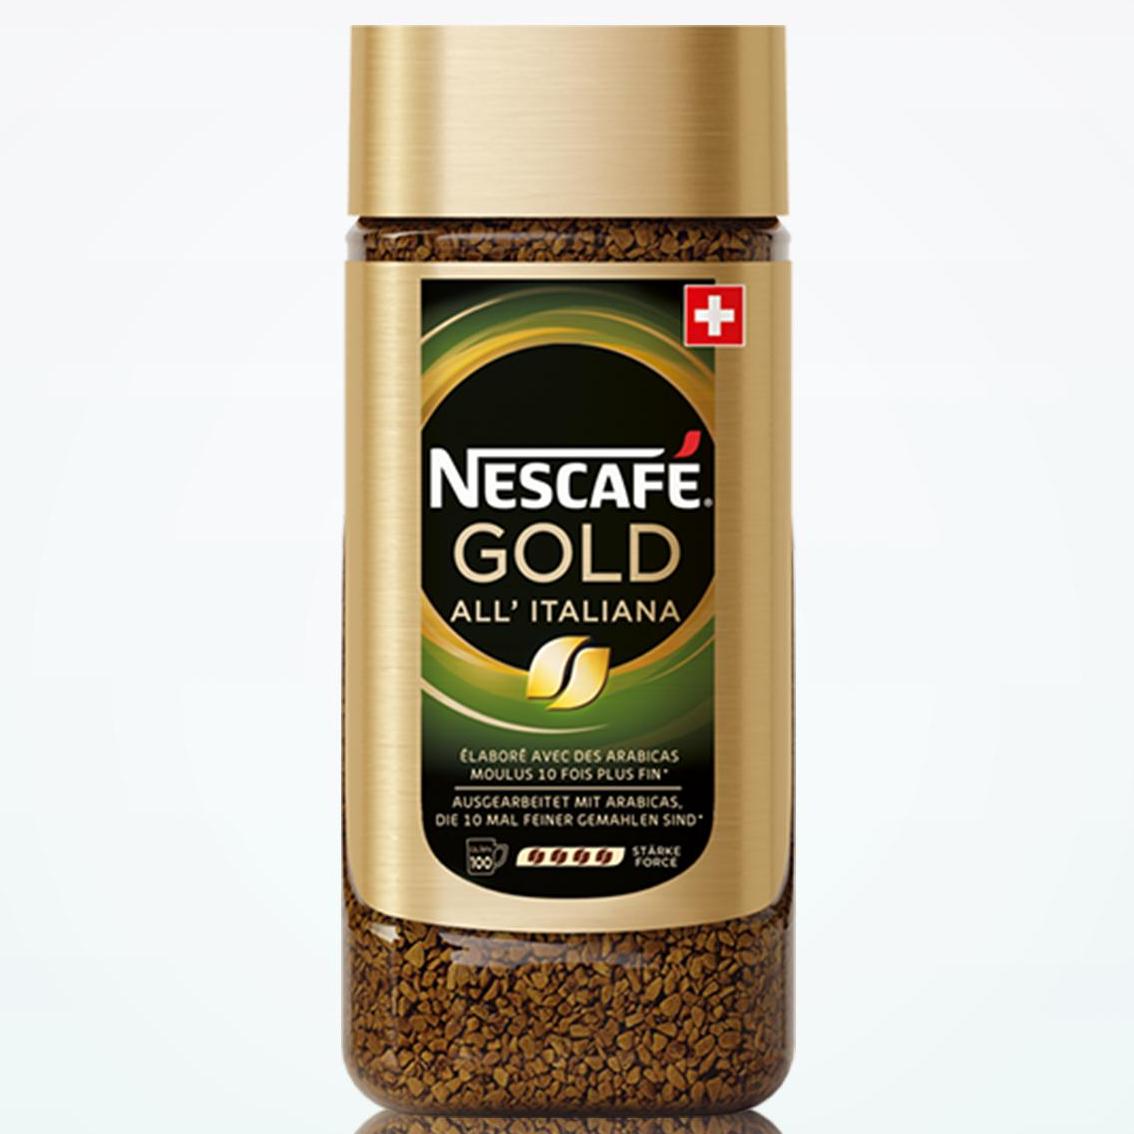 Nescafe Gold All’ italiana เนสกาแฟ โกลด์ ออล อิตาเลียน่า กาแฟนำเข้าจากสวิส 200g.